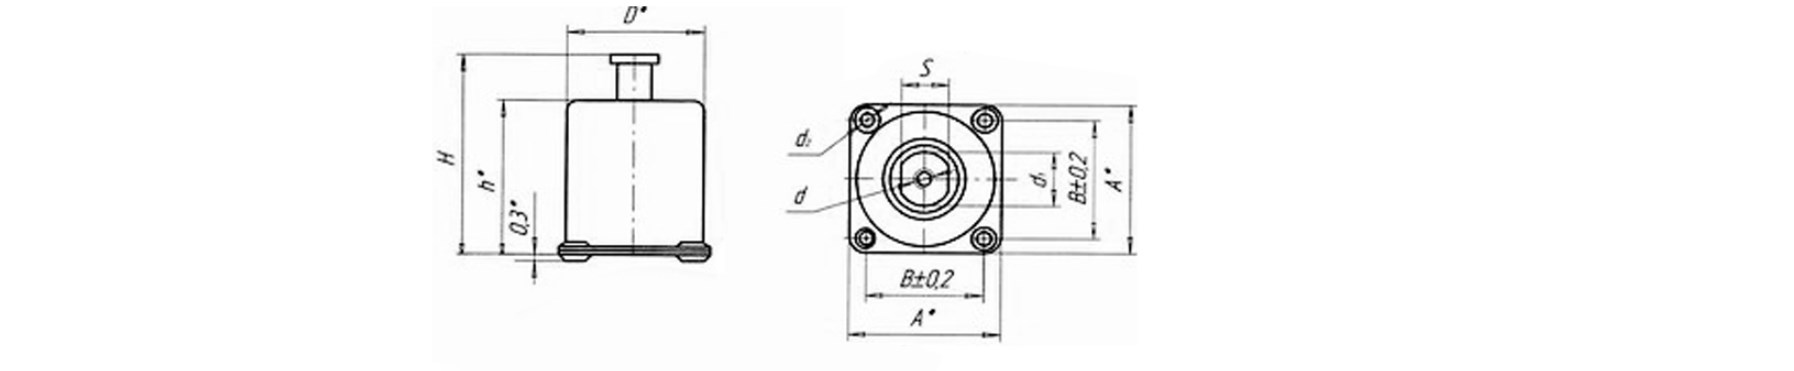 Схема габаритных размеров опорных амортизаторов АФД-3